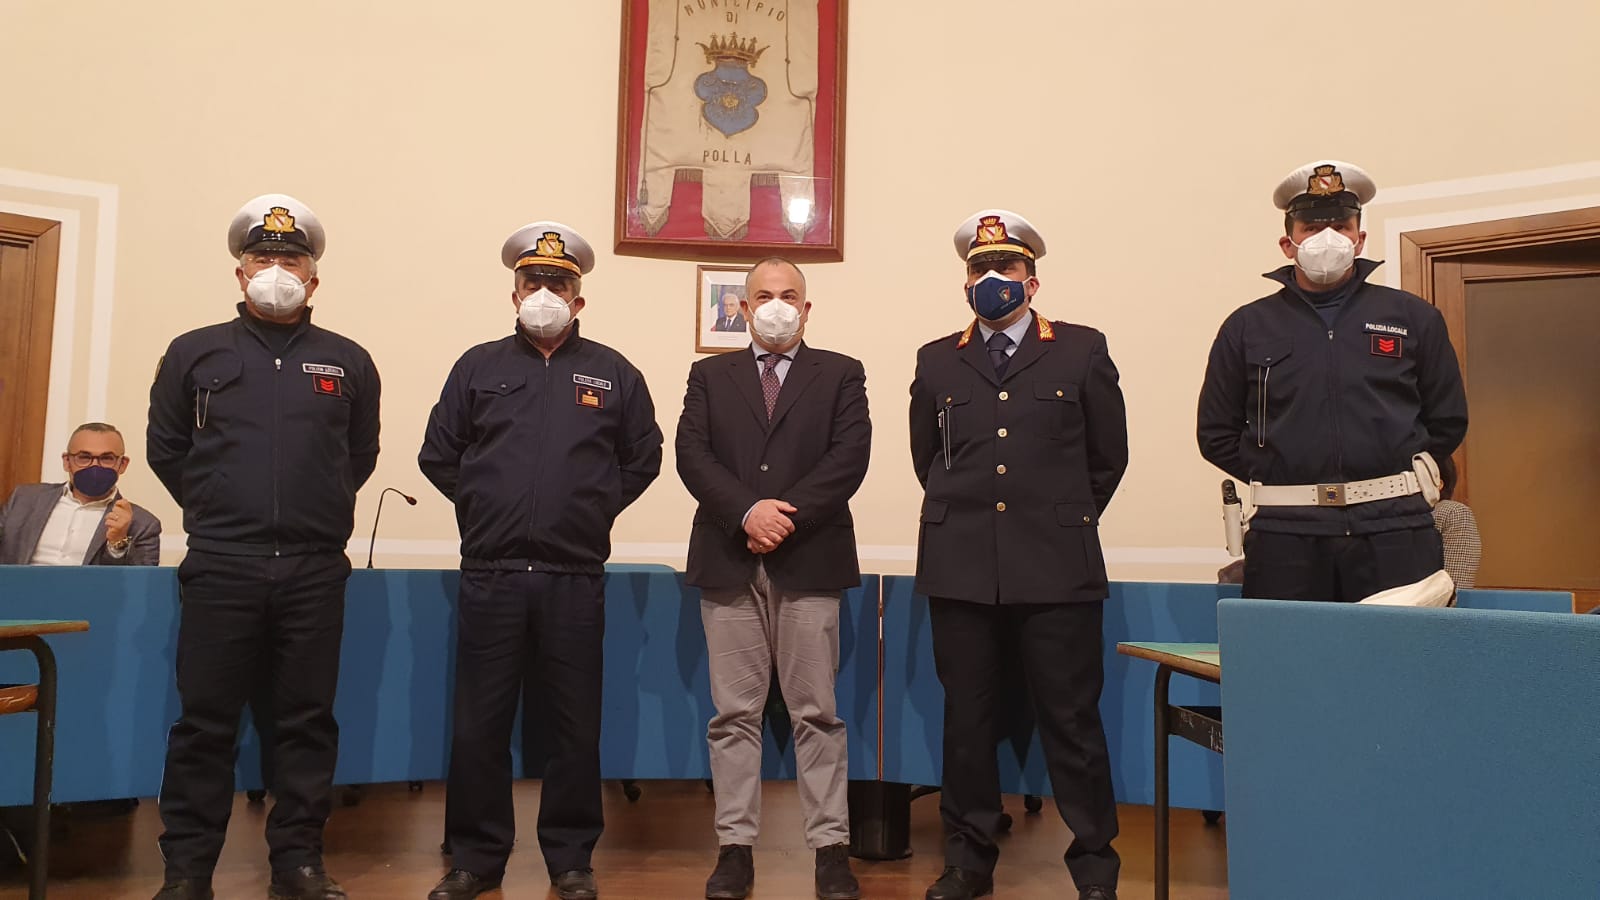 Polizia municipale di Polla: Cancro nominato luogotenente, La Rocca e Priore assistenti capo